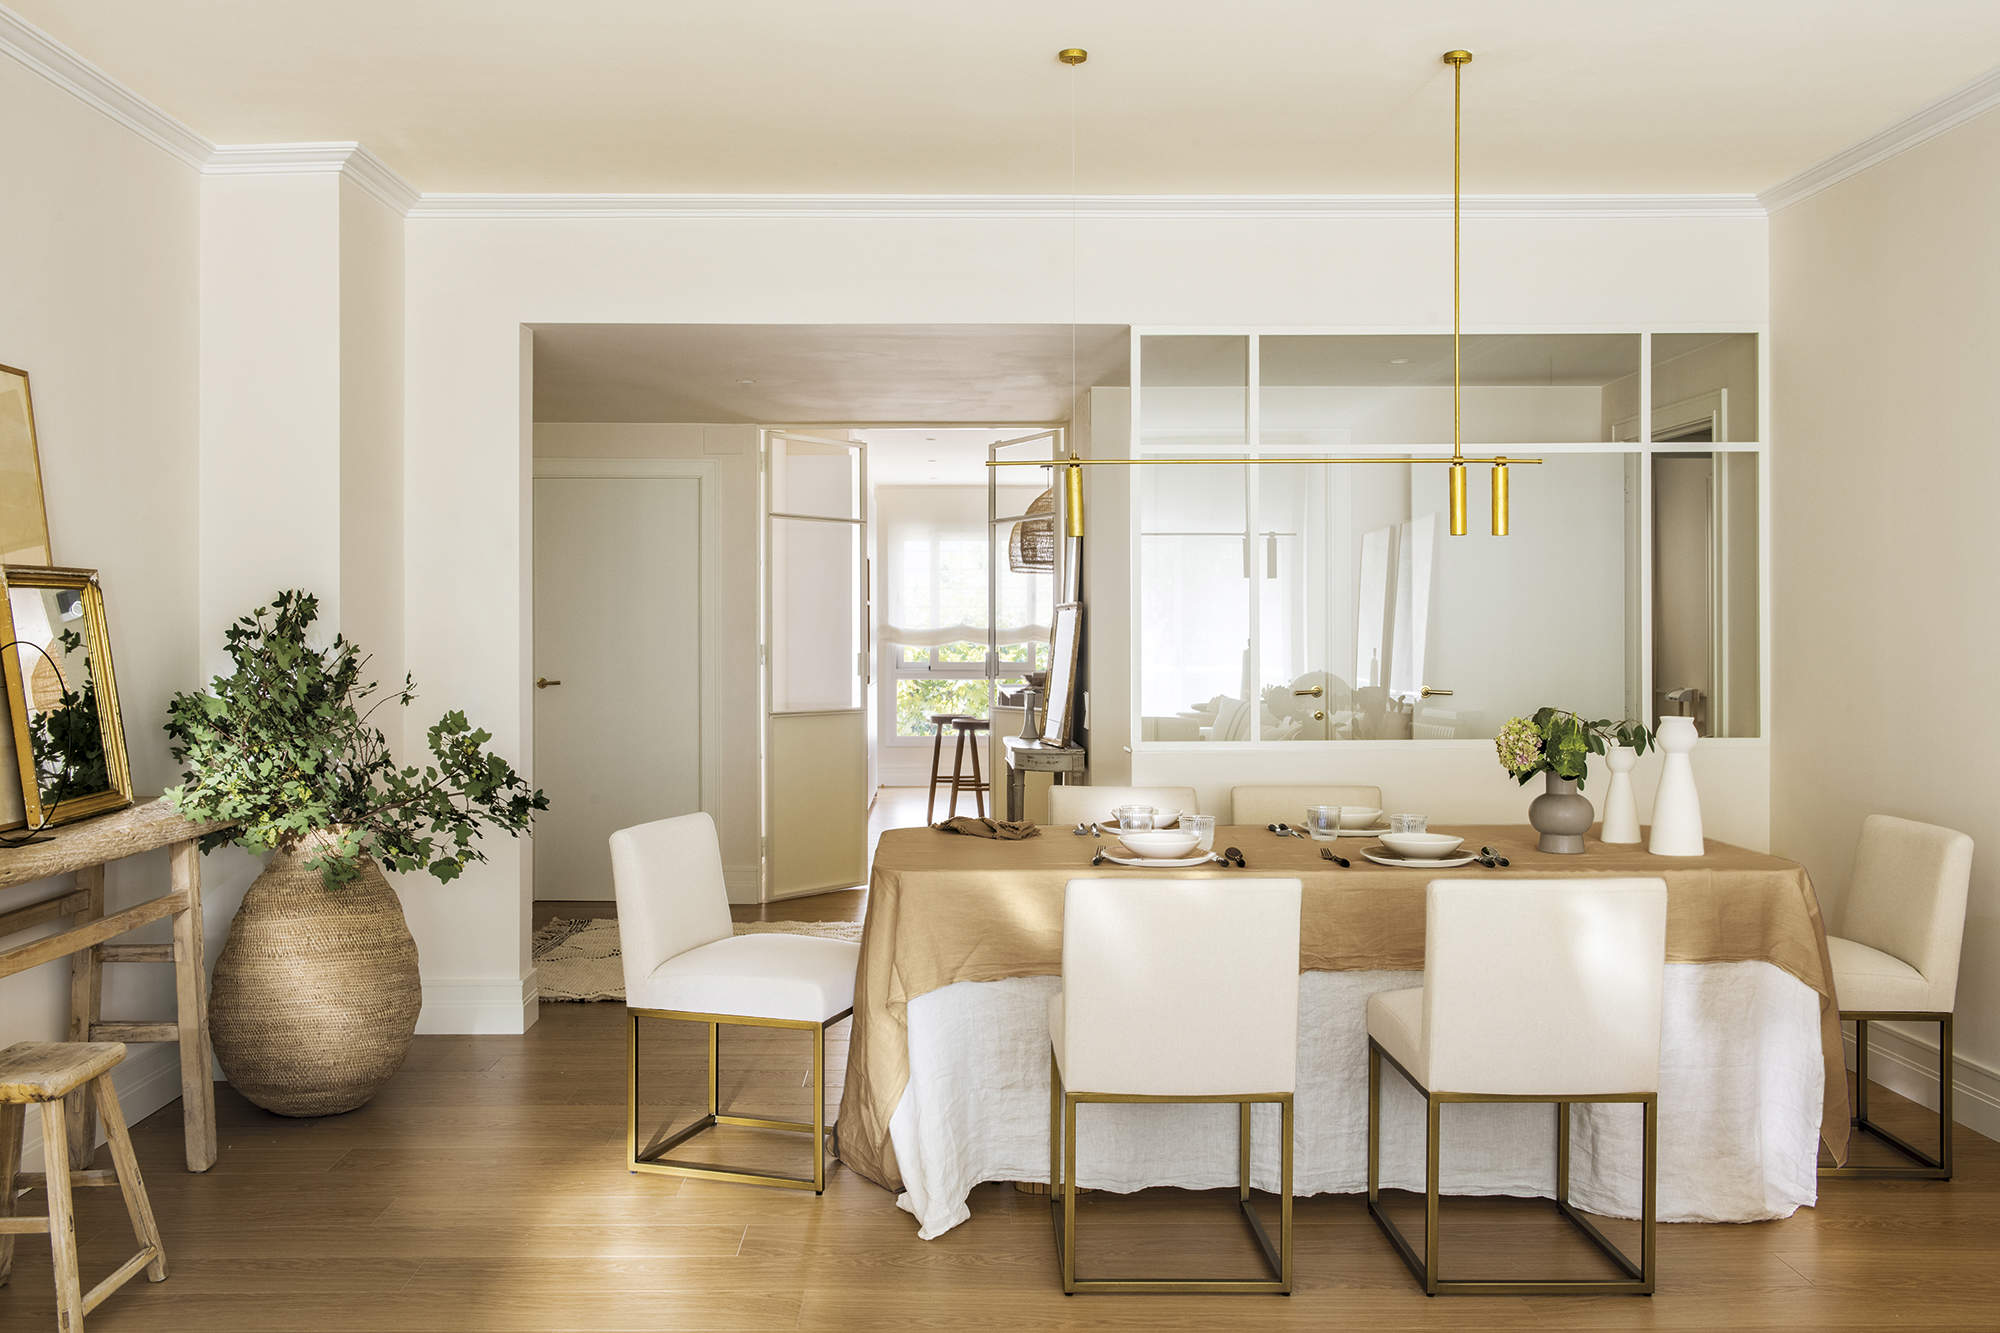 Comedor, recibidor, sillas blancas tapizadas, mantel blanco, mantel beige, pared de cristal.